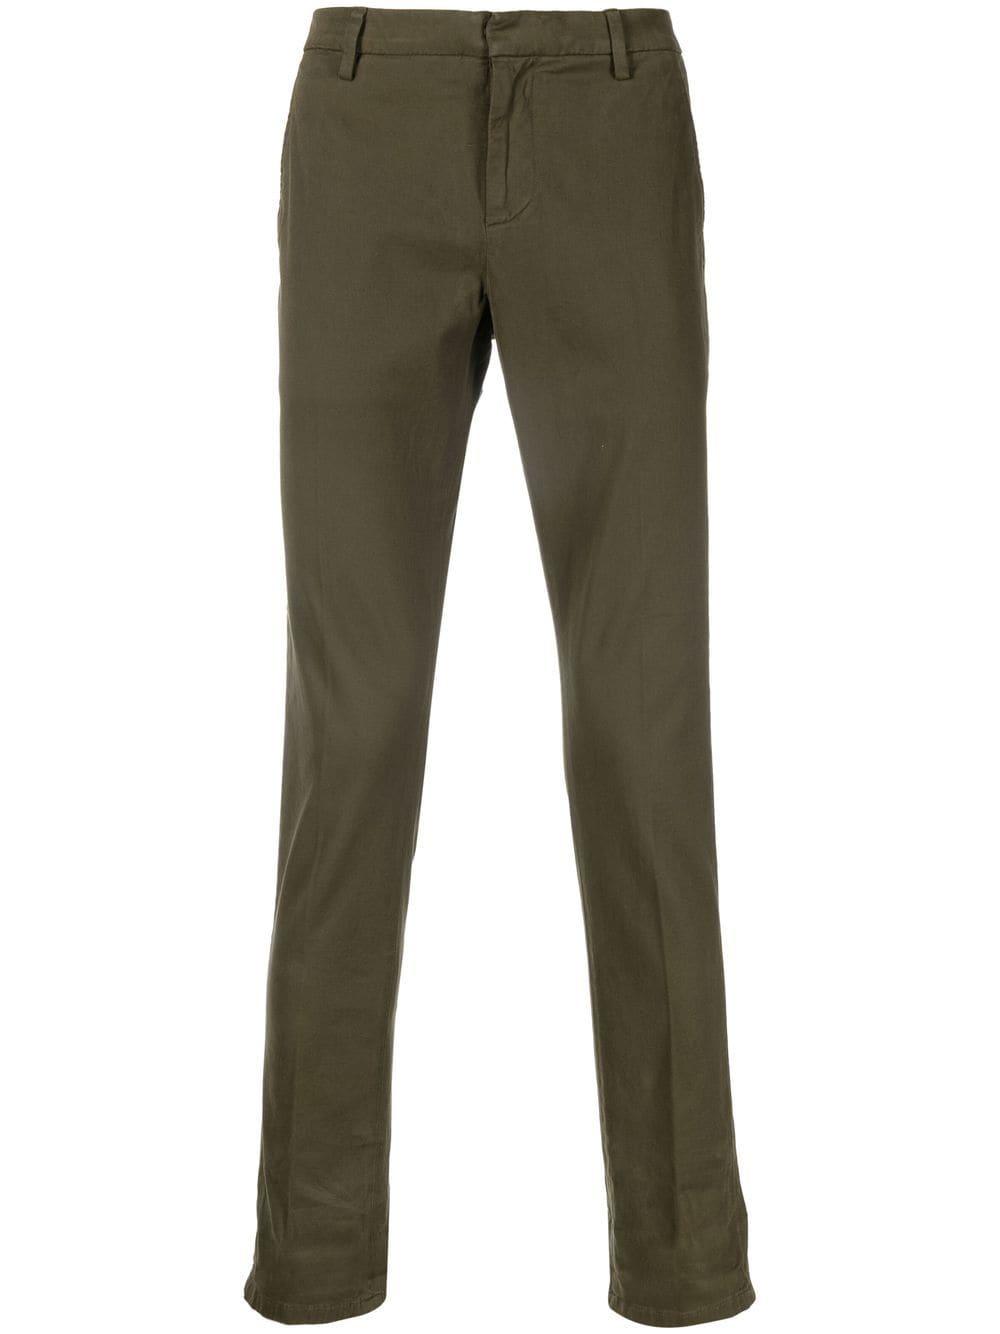 Pantalon en jean Jean Dondup pour homme en coloris Neutre élégants et chinos Pantalons casual Homme Vêtements Pantalons décontractés 